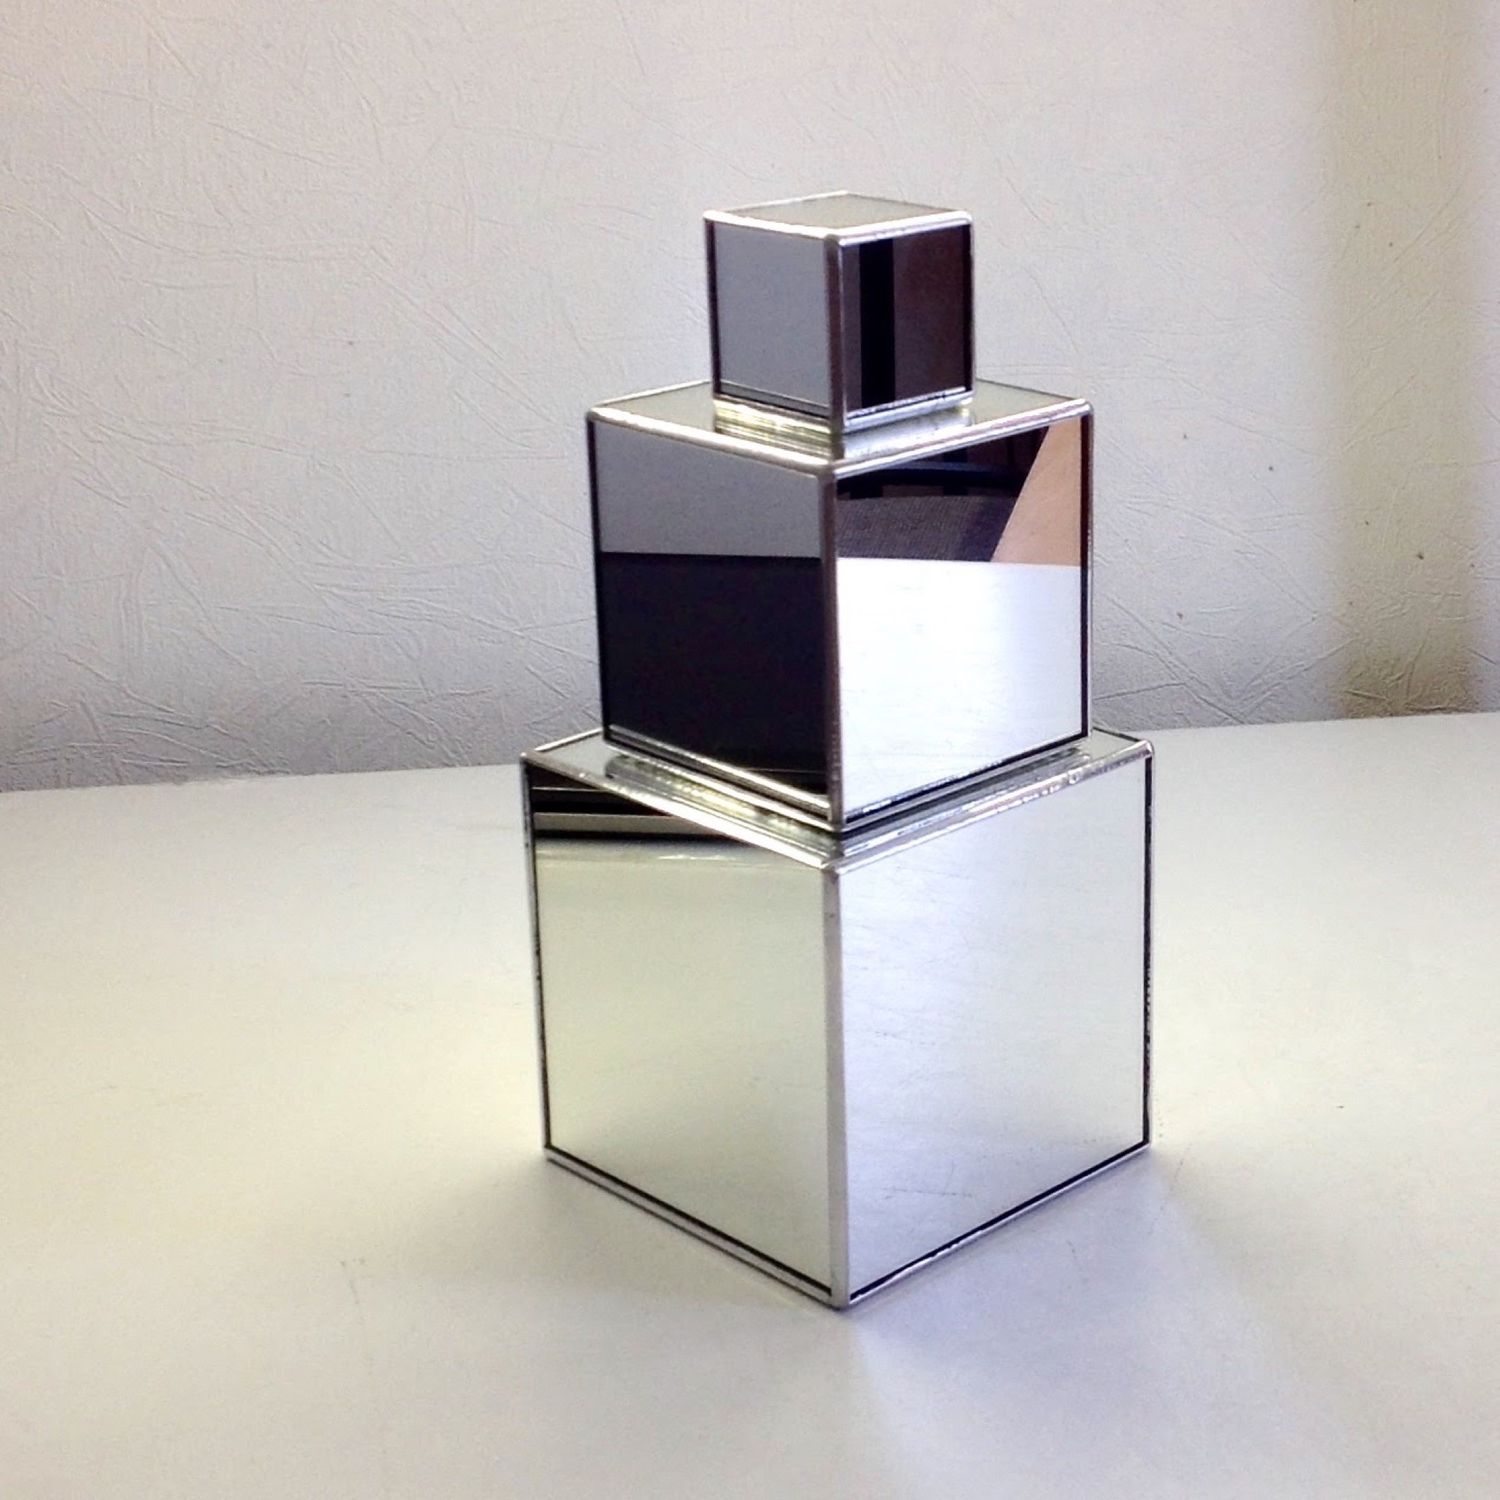 Reg kz. Зеркальный куб. Металлический куб для декора. Куб из зеркал. Зеркальные кубики для декора.